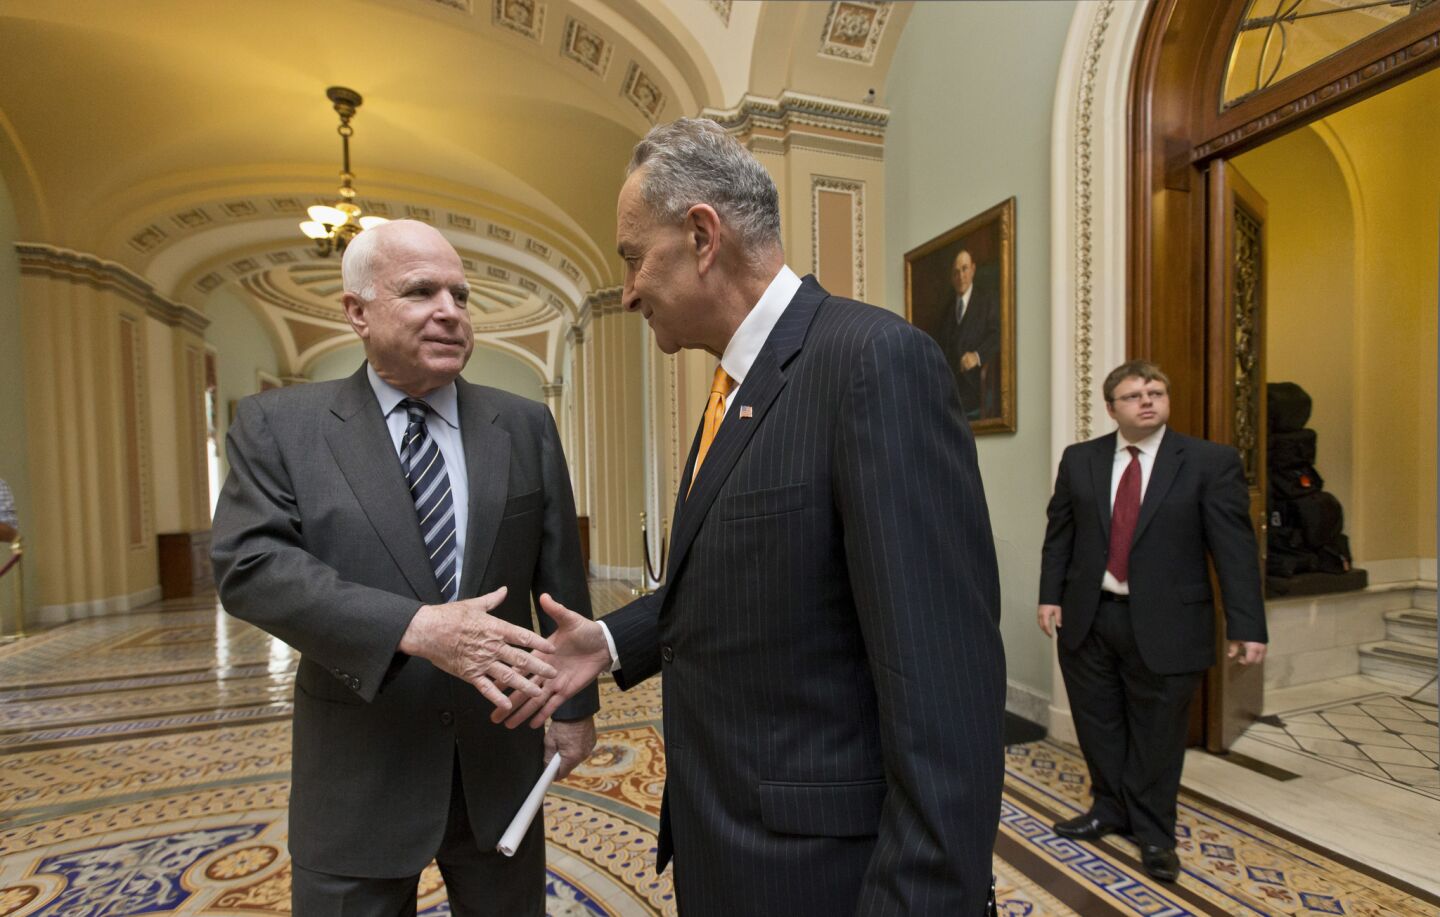 Bipartisan handshake